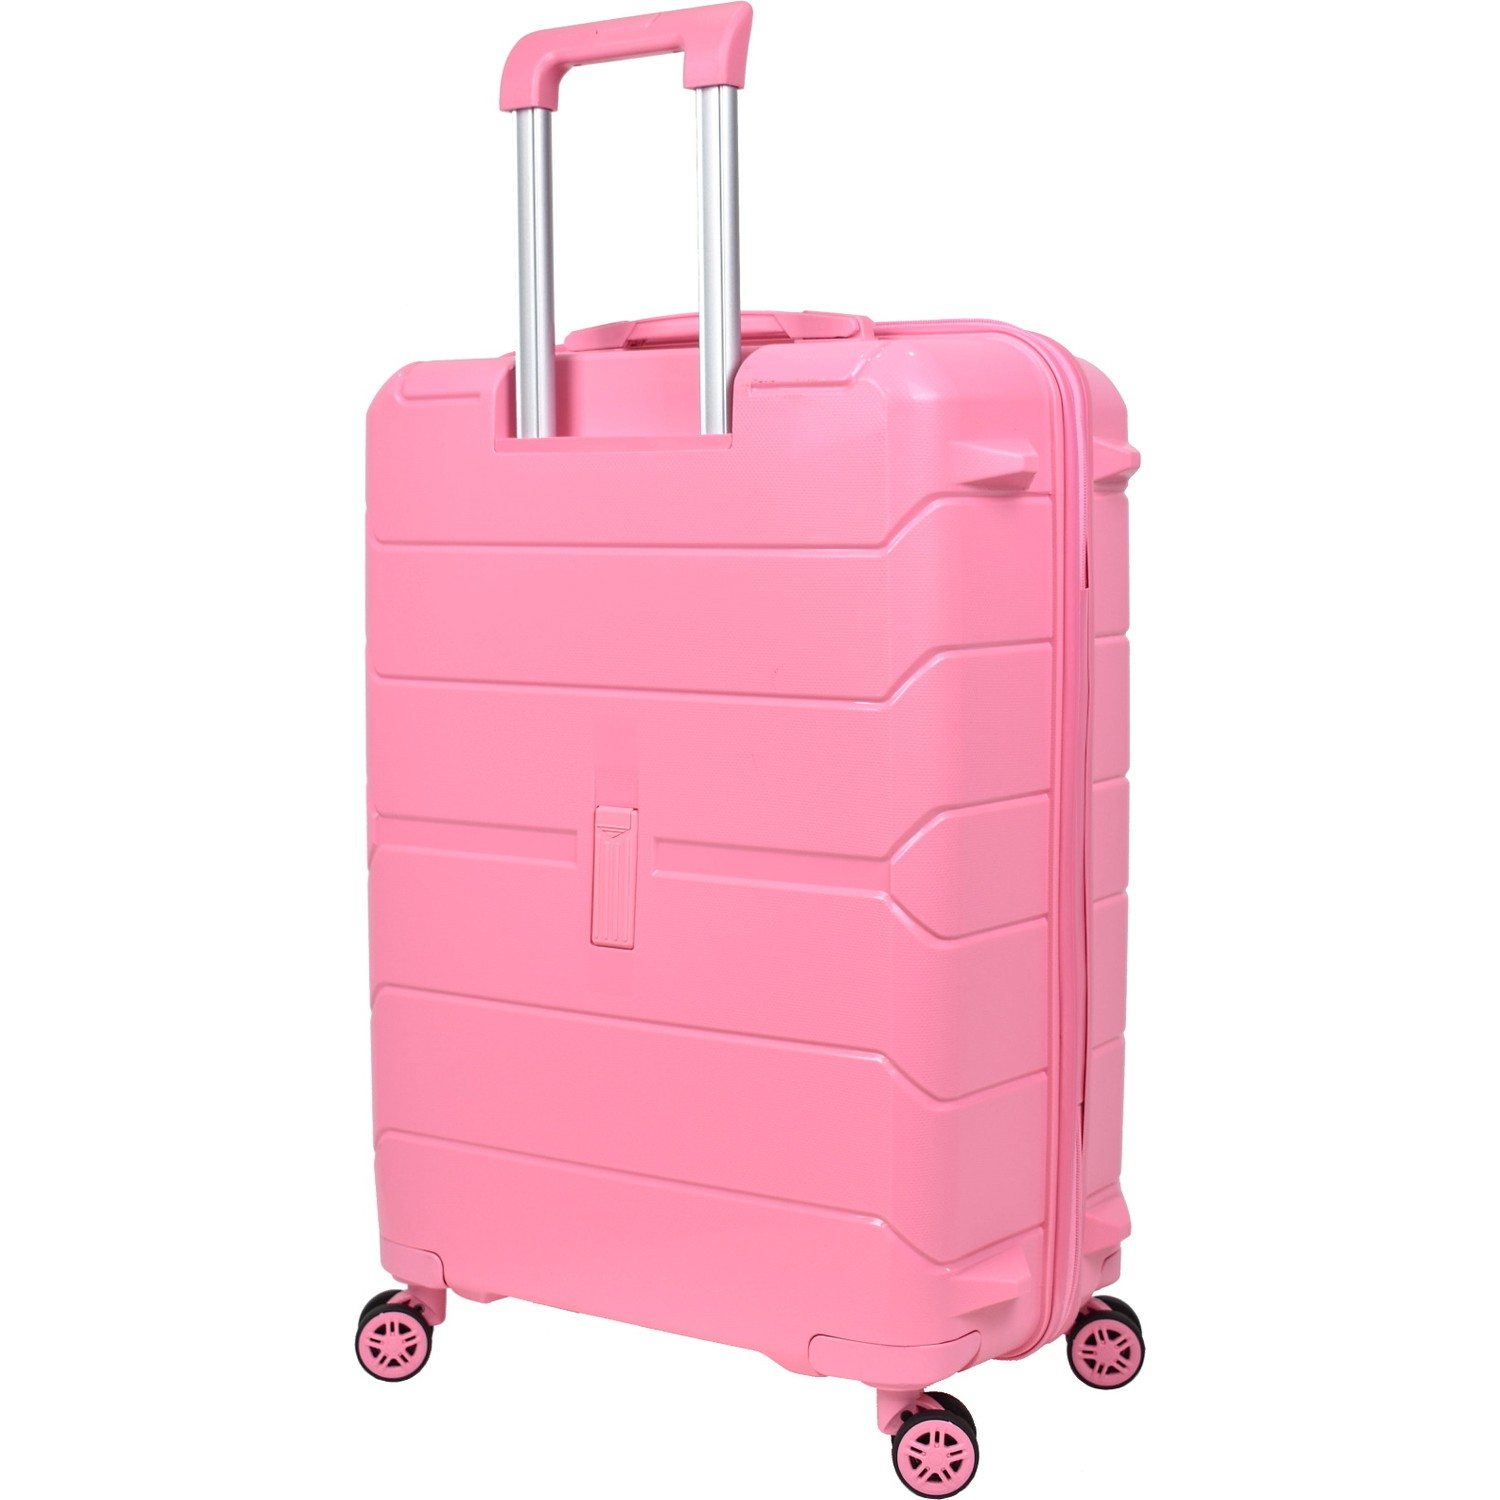 Большой чемодан из полипропилена MCS V366 L PINK! Для 23 кг! - 3